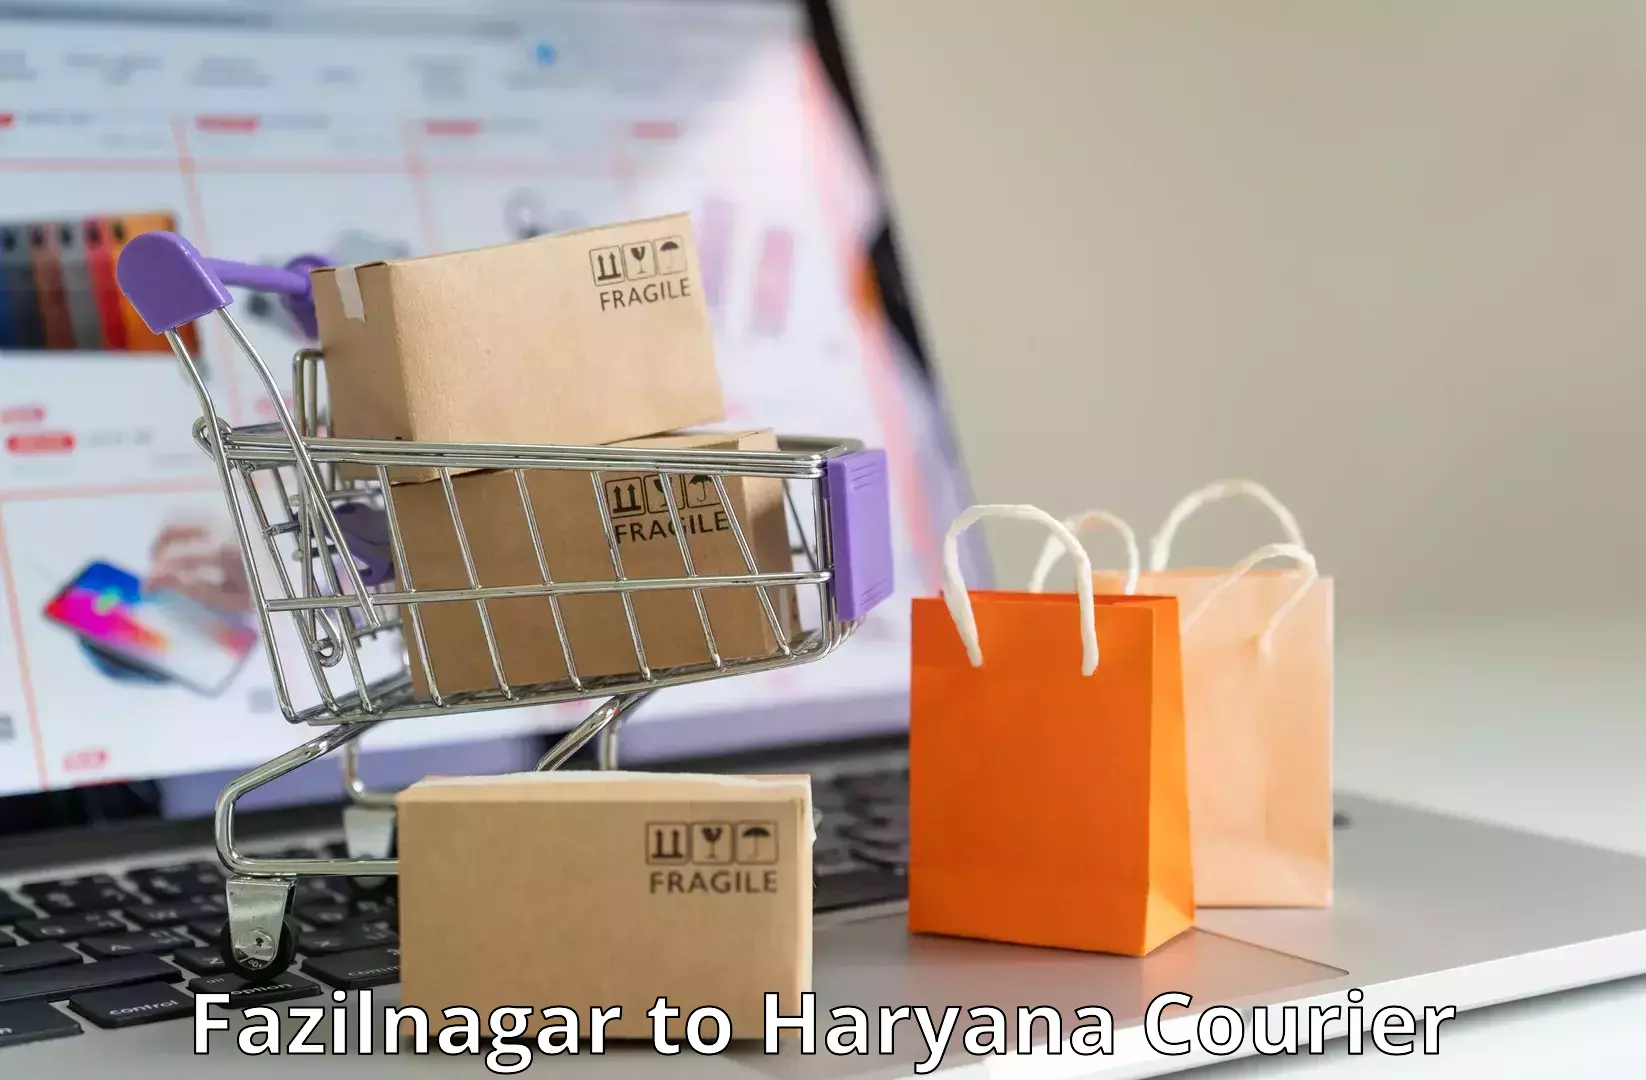 Custom courier packaging in Fazilnagar to Haryana